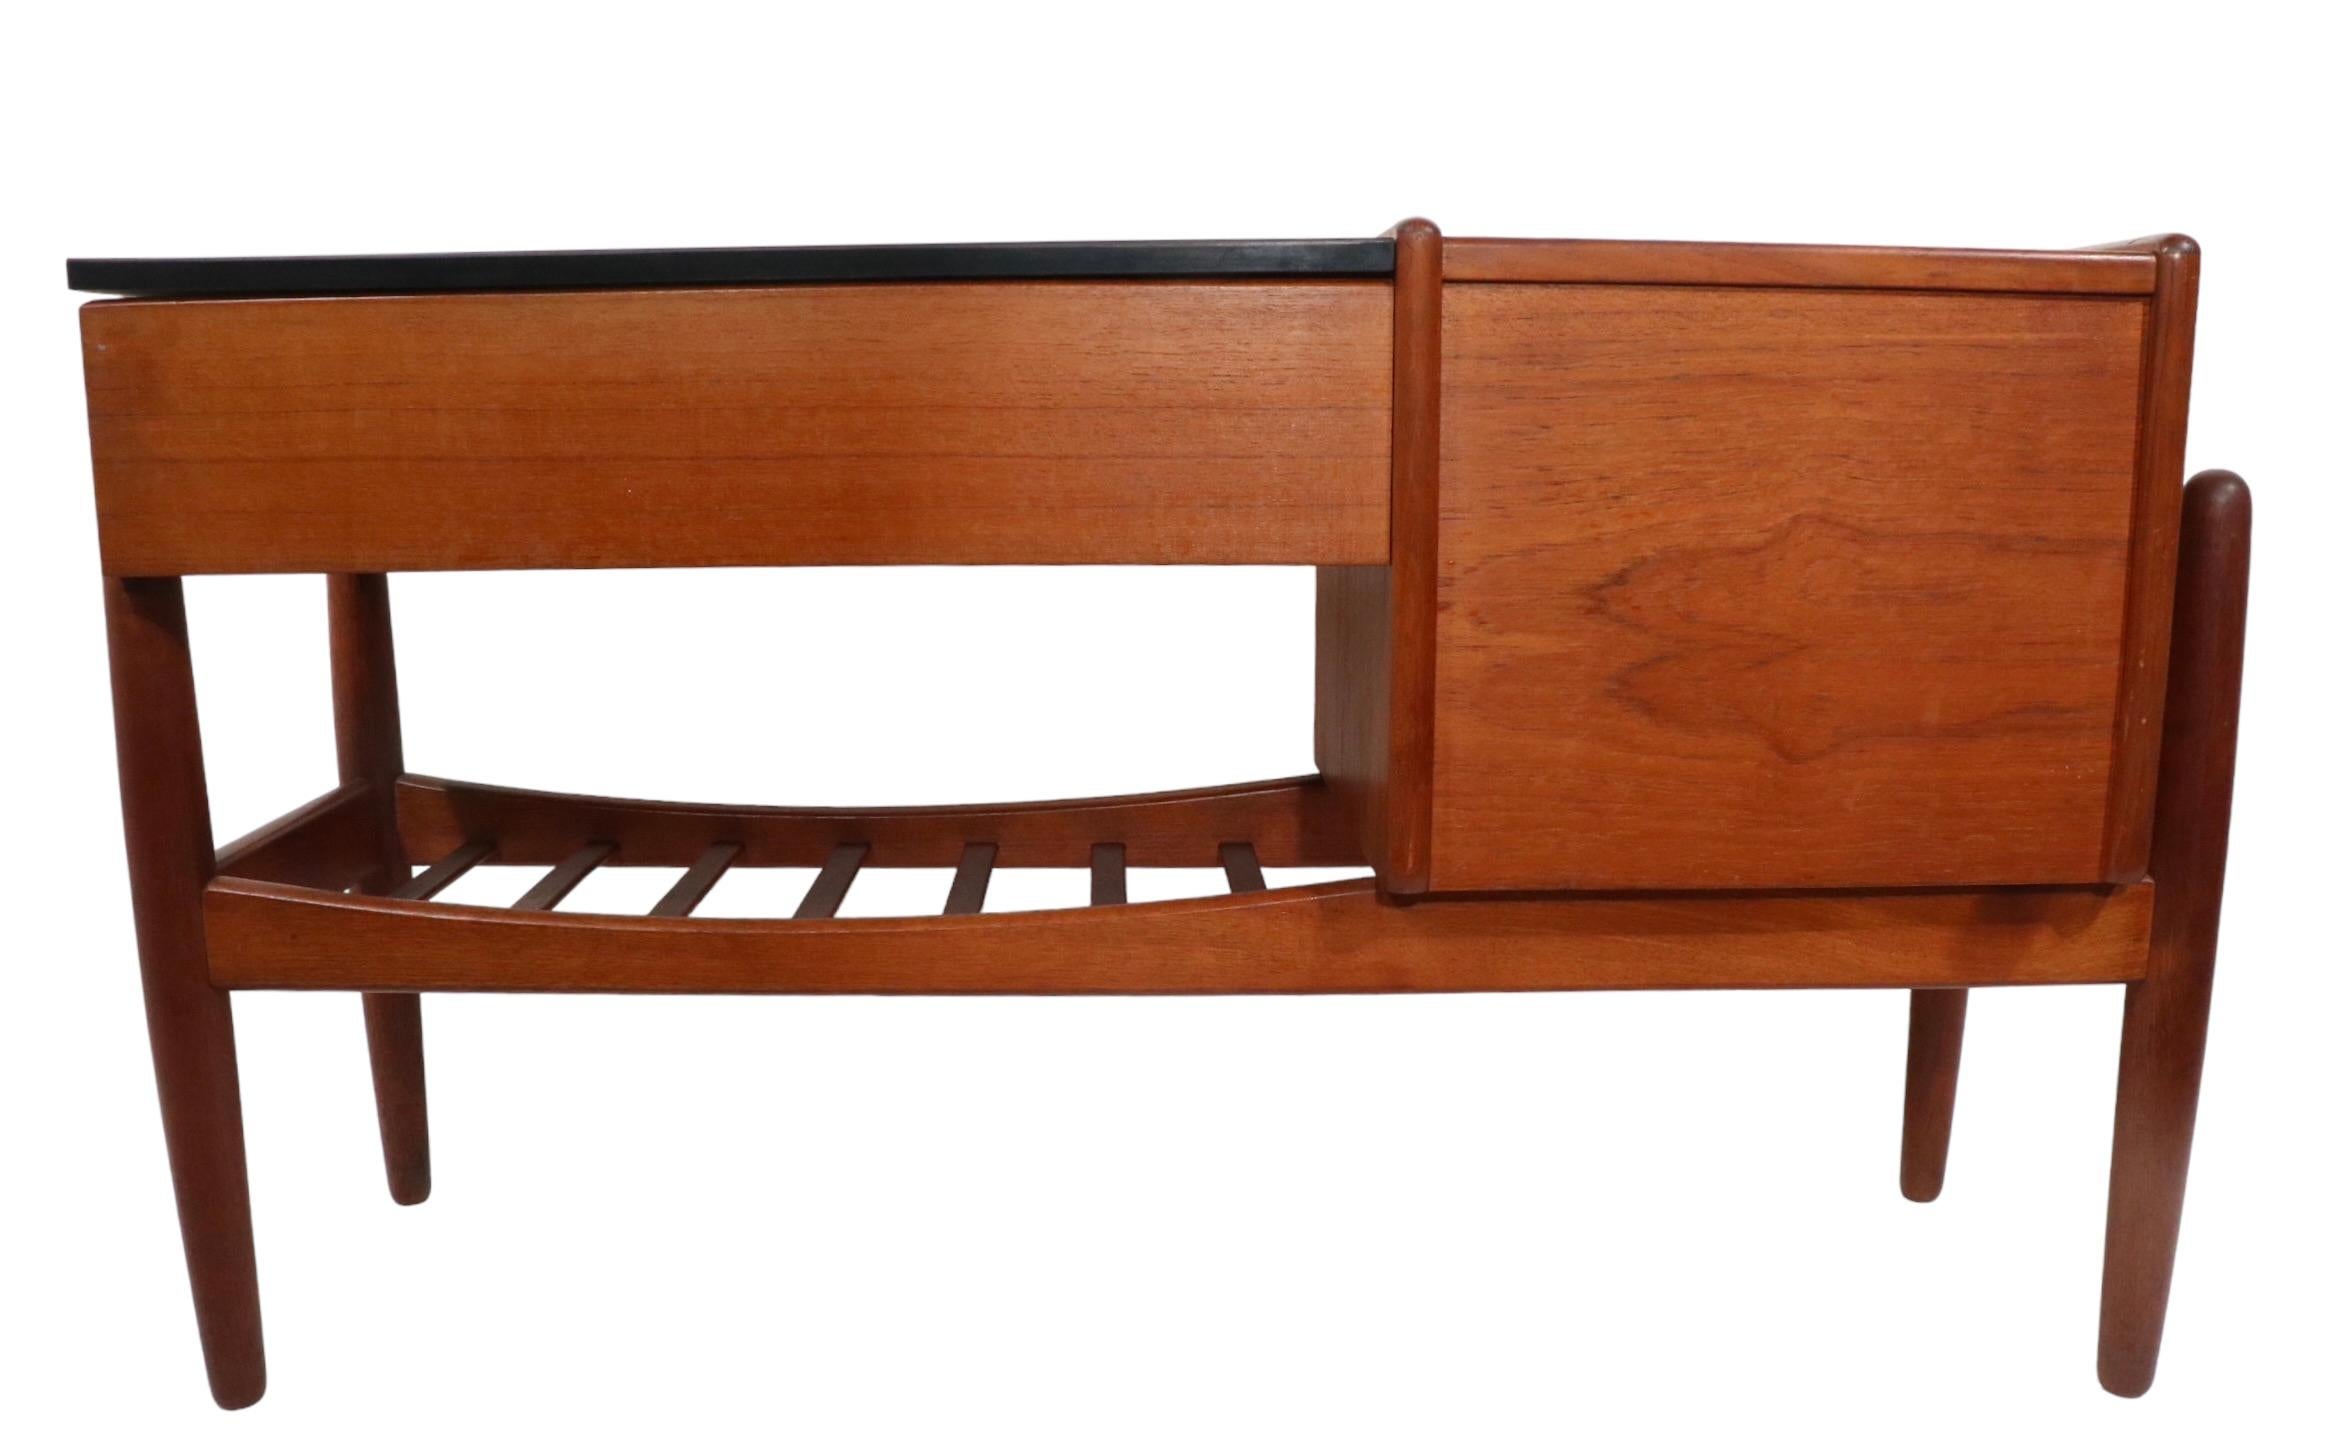 Iconique table d'appoint danoise du milieu du siècle, conçue par Arne Wahl Iversen, pour Vinde Mobelfabrik, fabriquée au Danemark dans les années 1960. La pièce comprend une banque de trois tiroirs flanquée d'une section de jardinière doublée